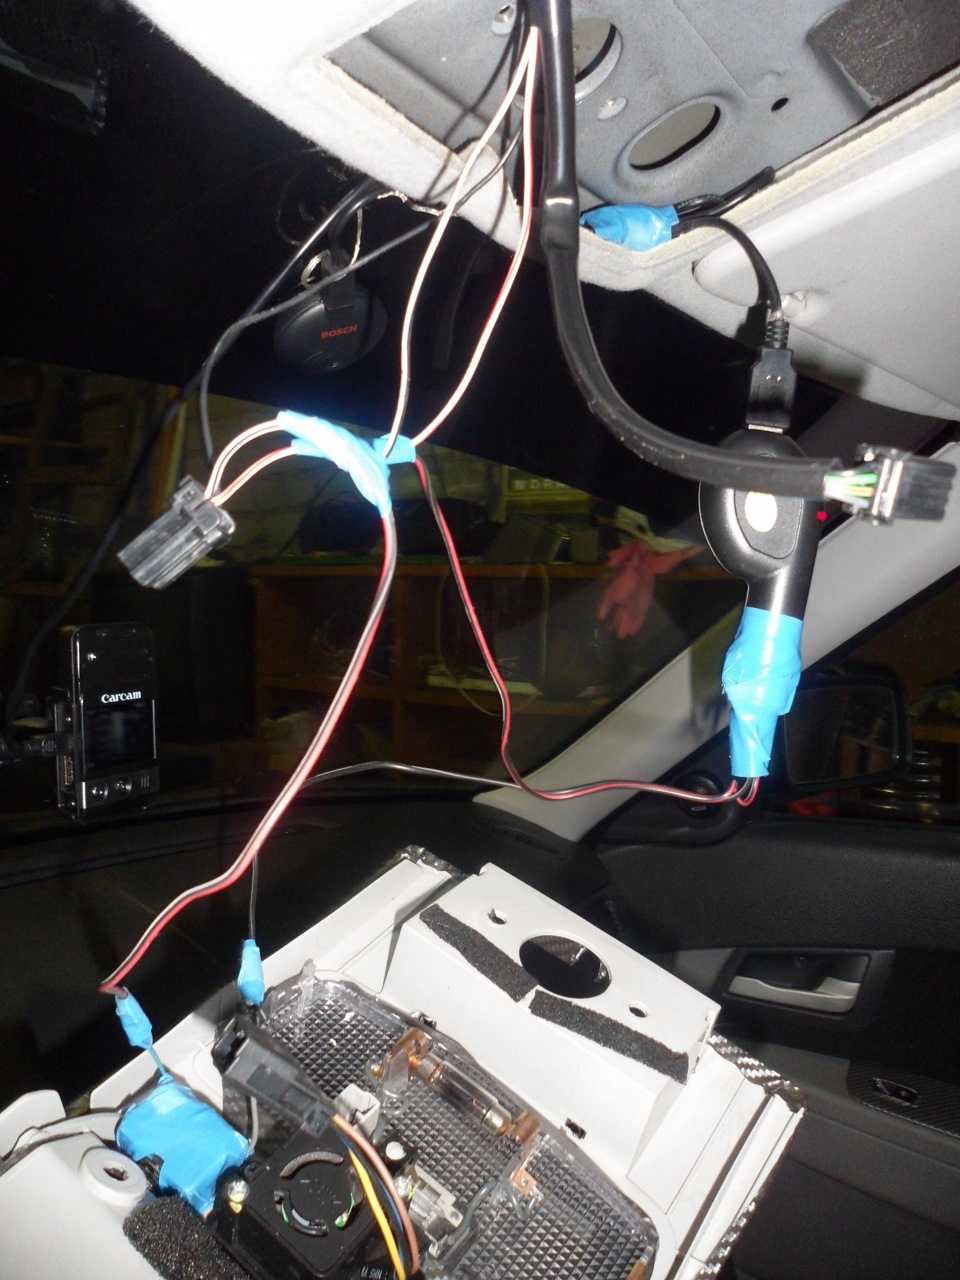 Светодиодная лента с датчиком движения: как подключить сенсор для организации эффектной подсветки